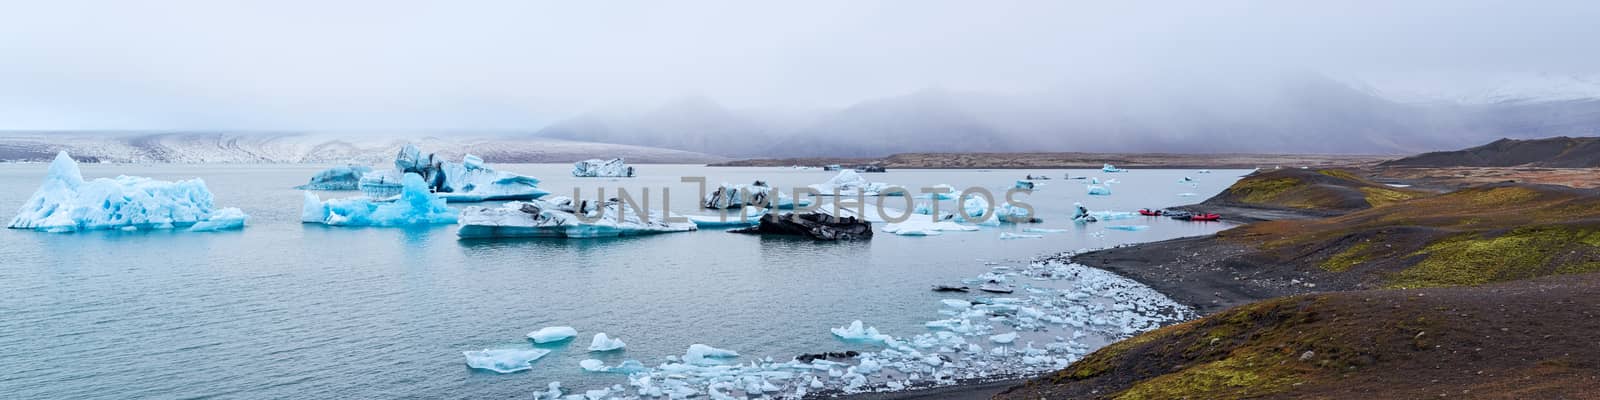 Icebergs in the Jokulsarlon's lake near Vatnajokull glacier in a panoramic view, Iceland